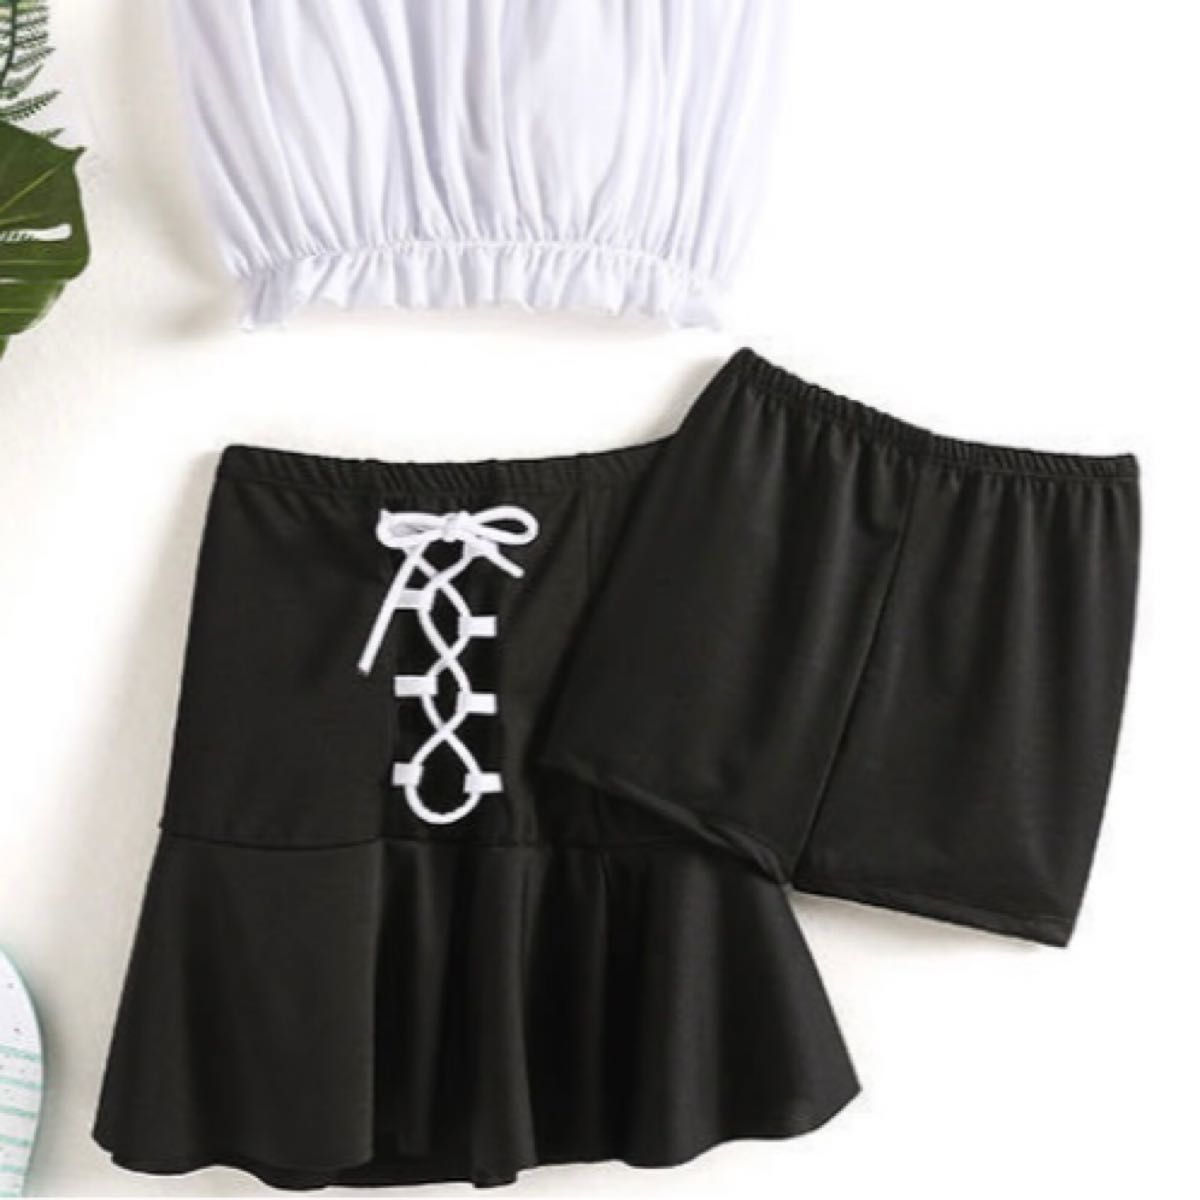 レディース タンキニ 水着 3点セット ビキニ 体型カバー フリル ビスチェ 韓国 スカート パンツ 可愛い プール M 白黒 